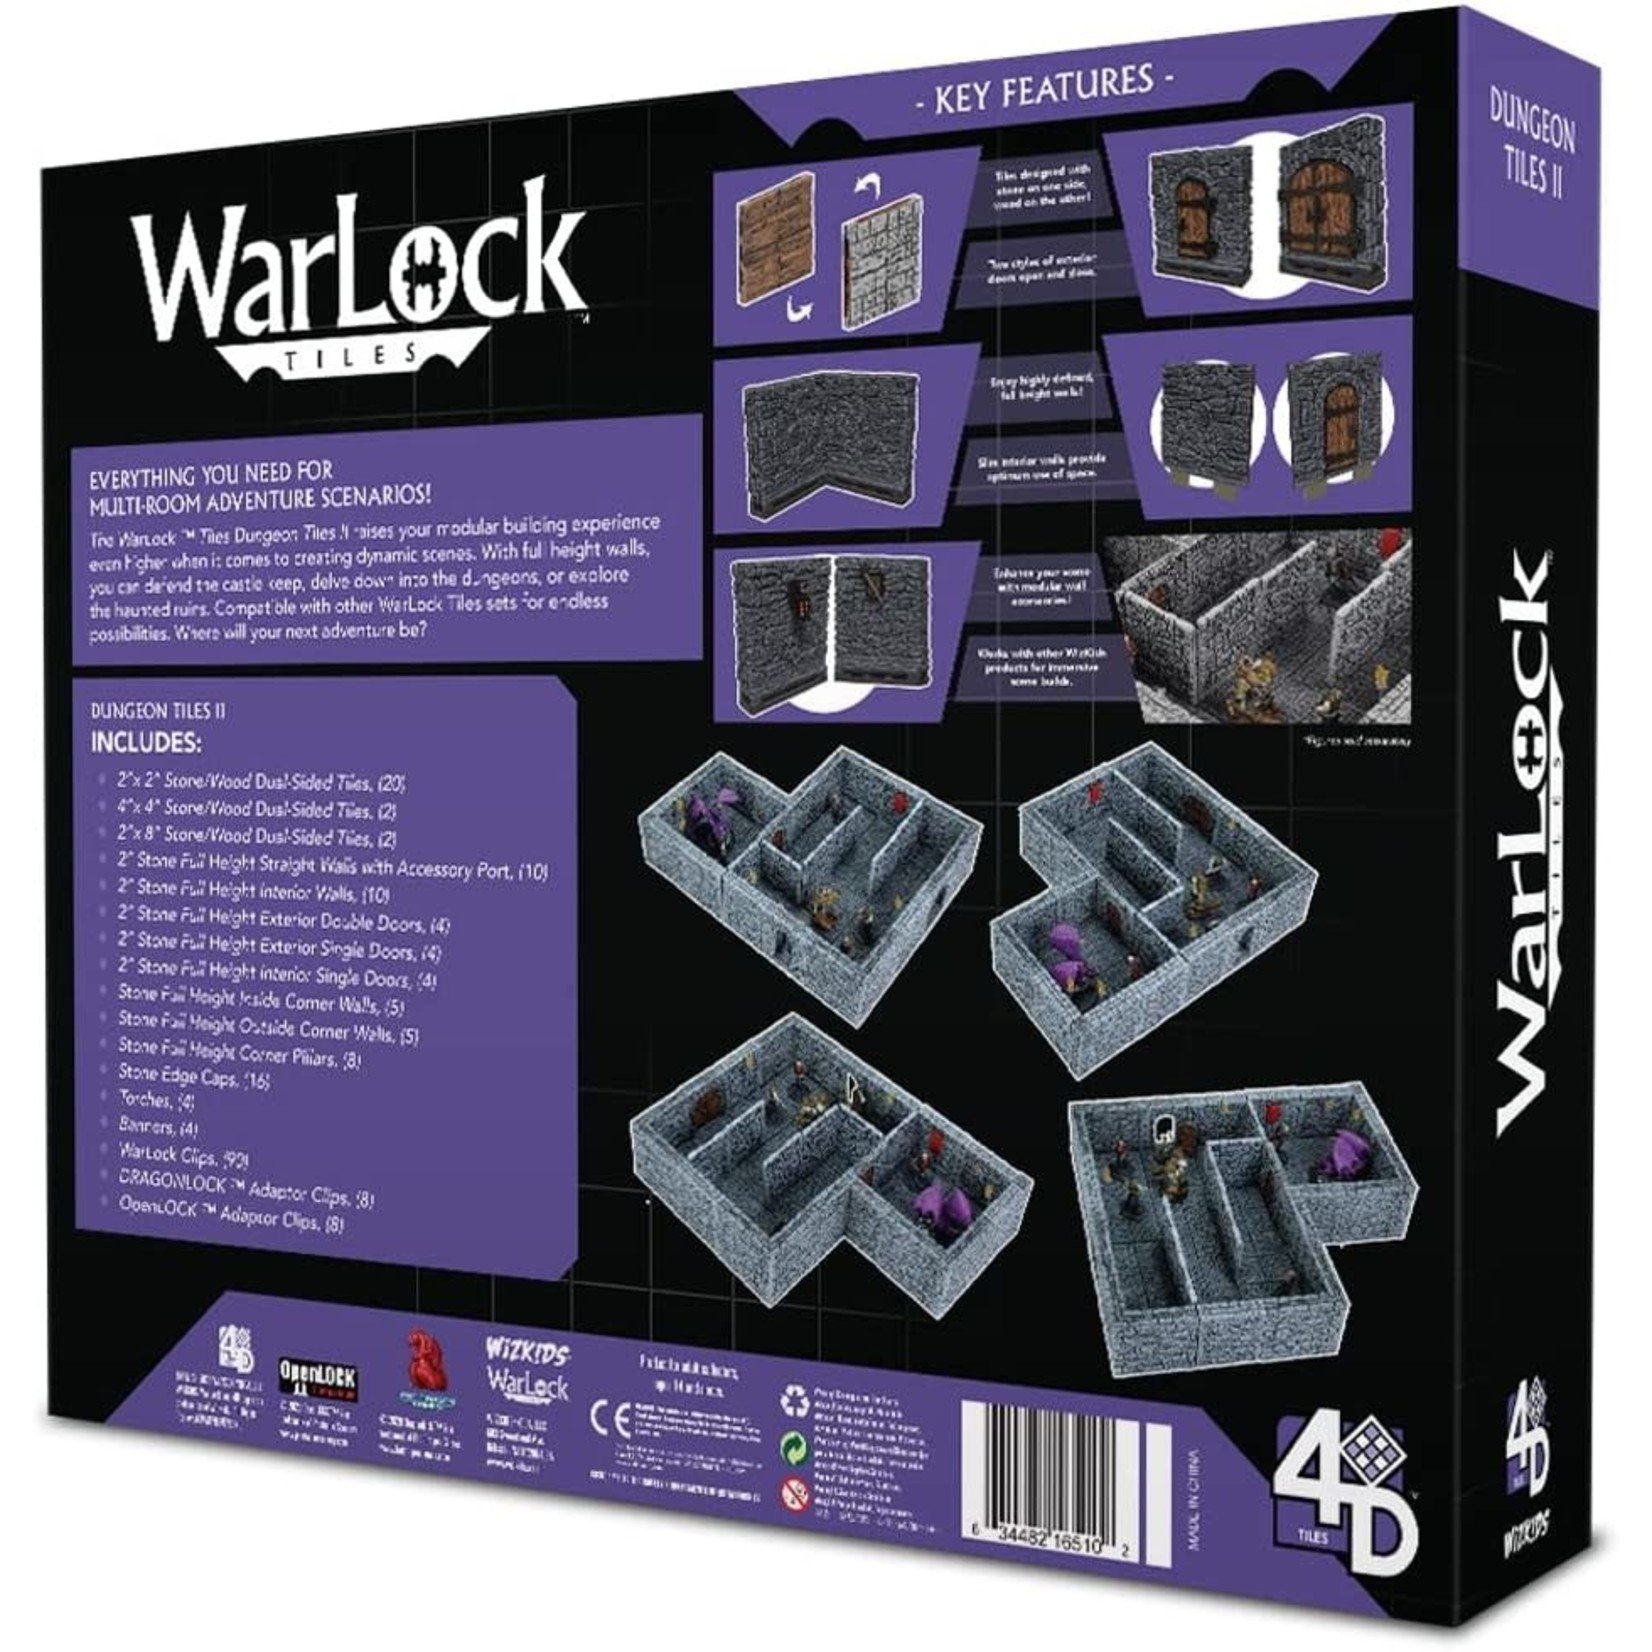 WizKids WarLock Tiles: Dungeon Tiles II, Full Height Stone Walls